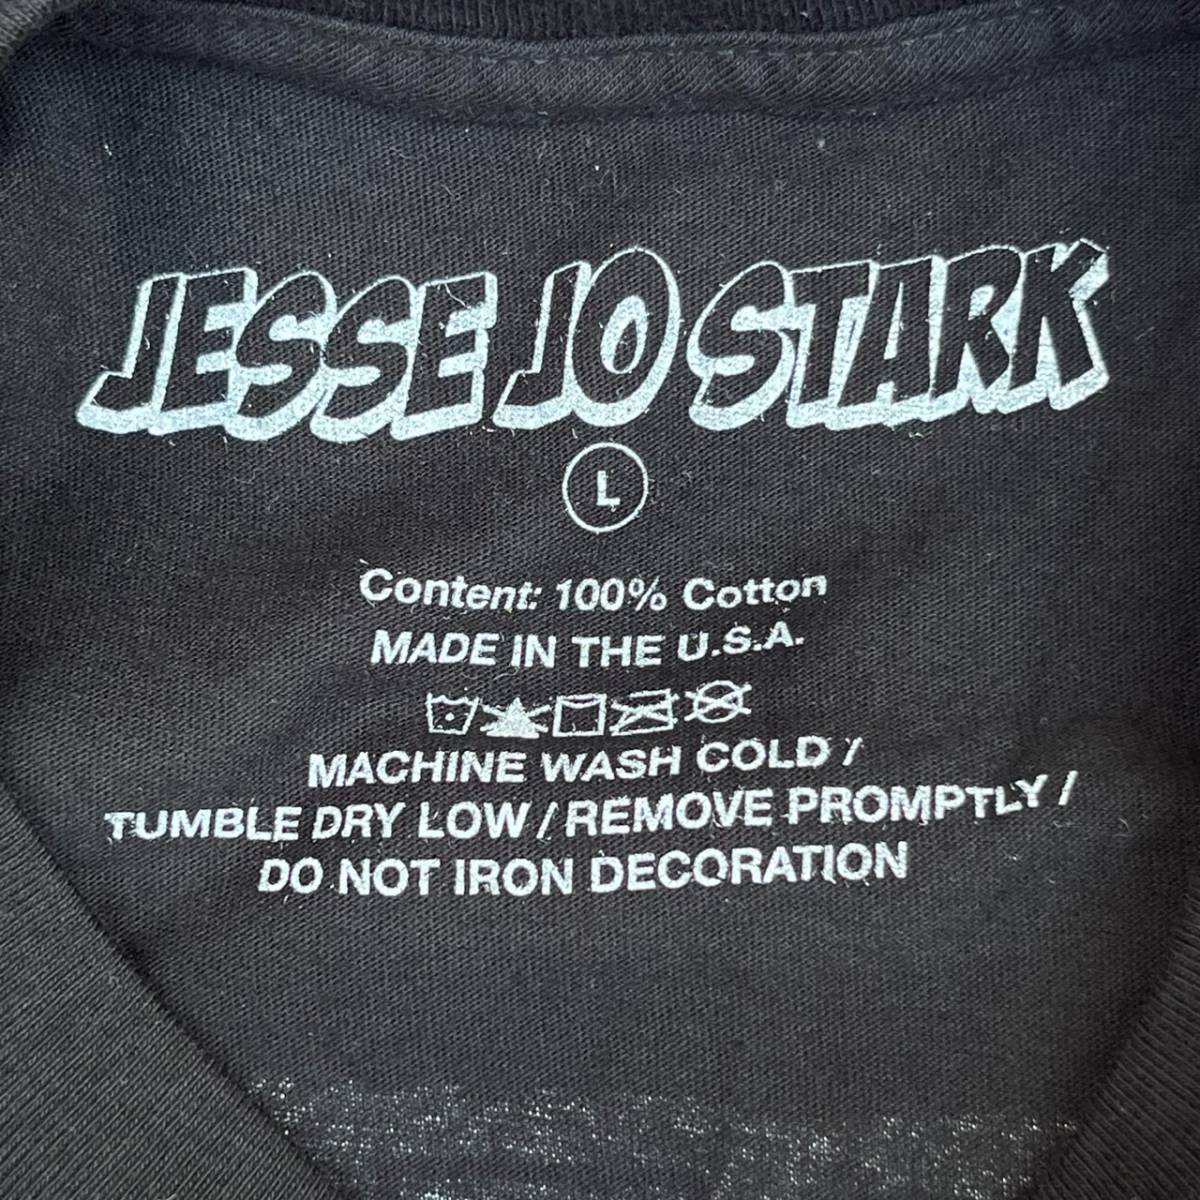 新品 JESSE JO STARK ジェシージョースターク Lサイズ DEADLY DOLL Tシャツ プリント クロムハーツ ブラック